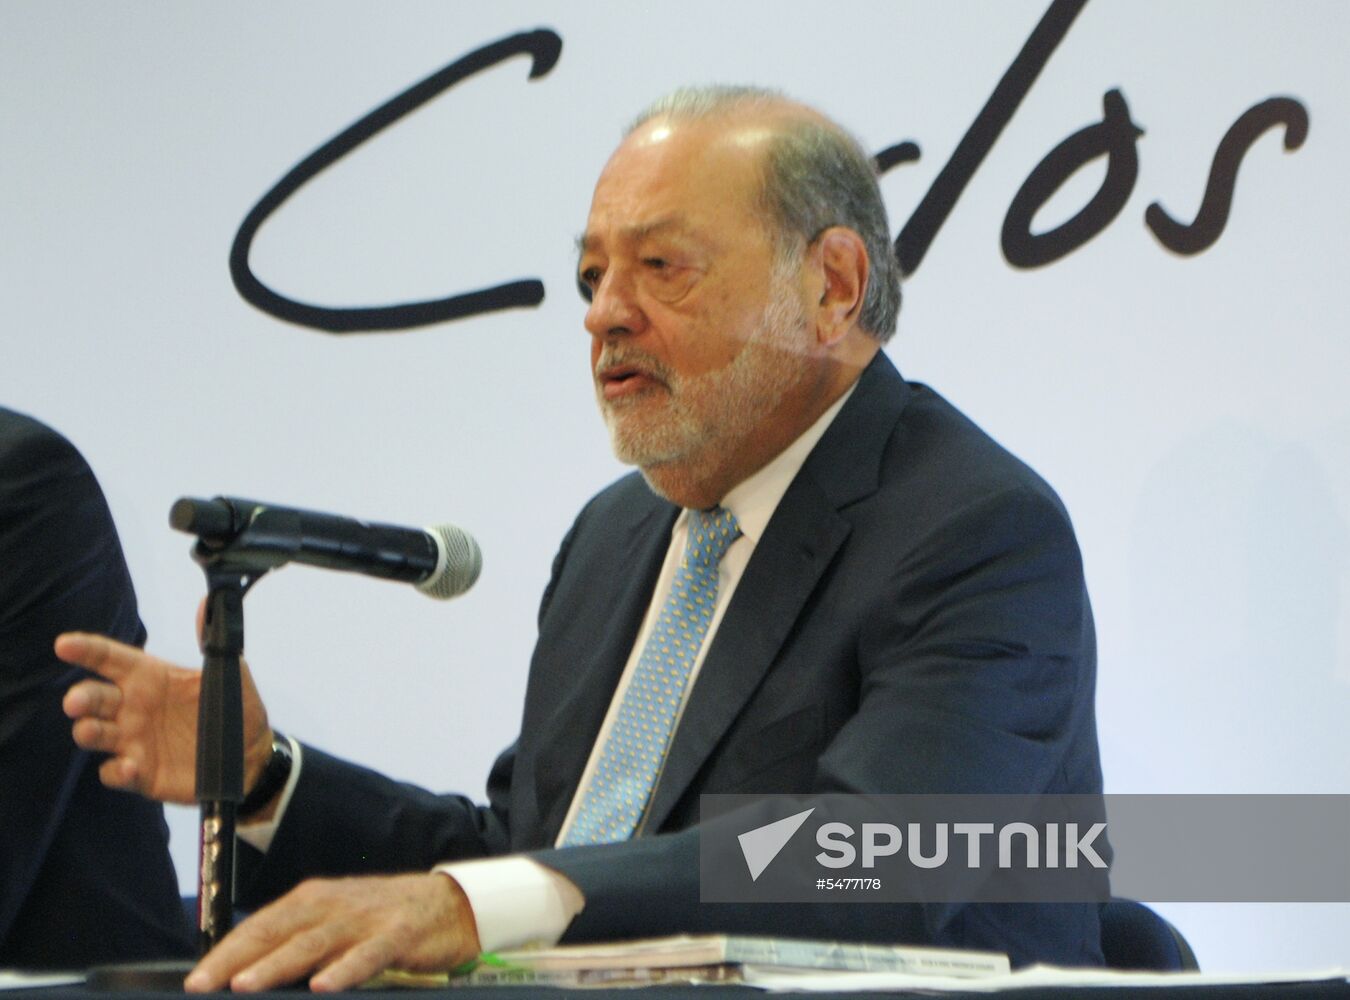 Mexican multi-billionaire Carlos Slim